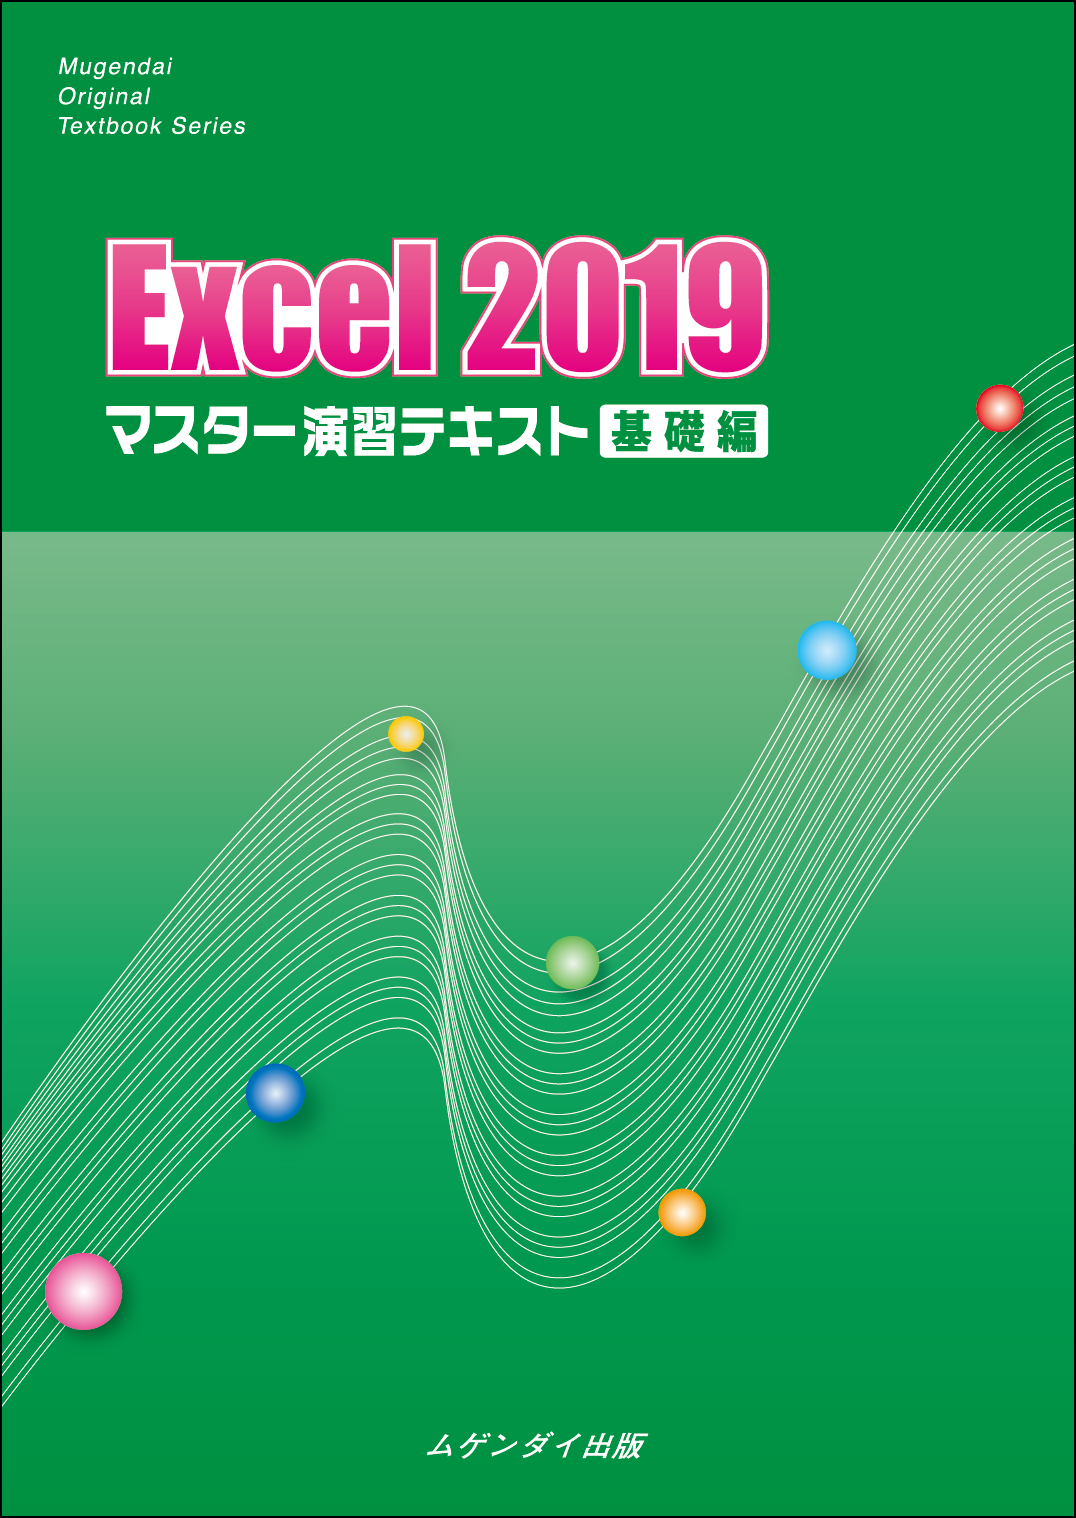 Excel2019}X^[KeLXg b